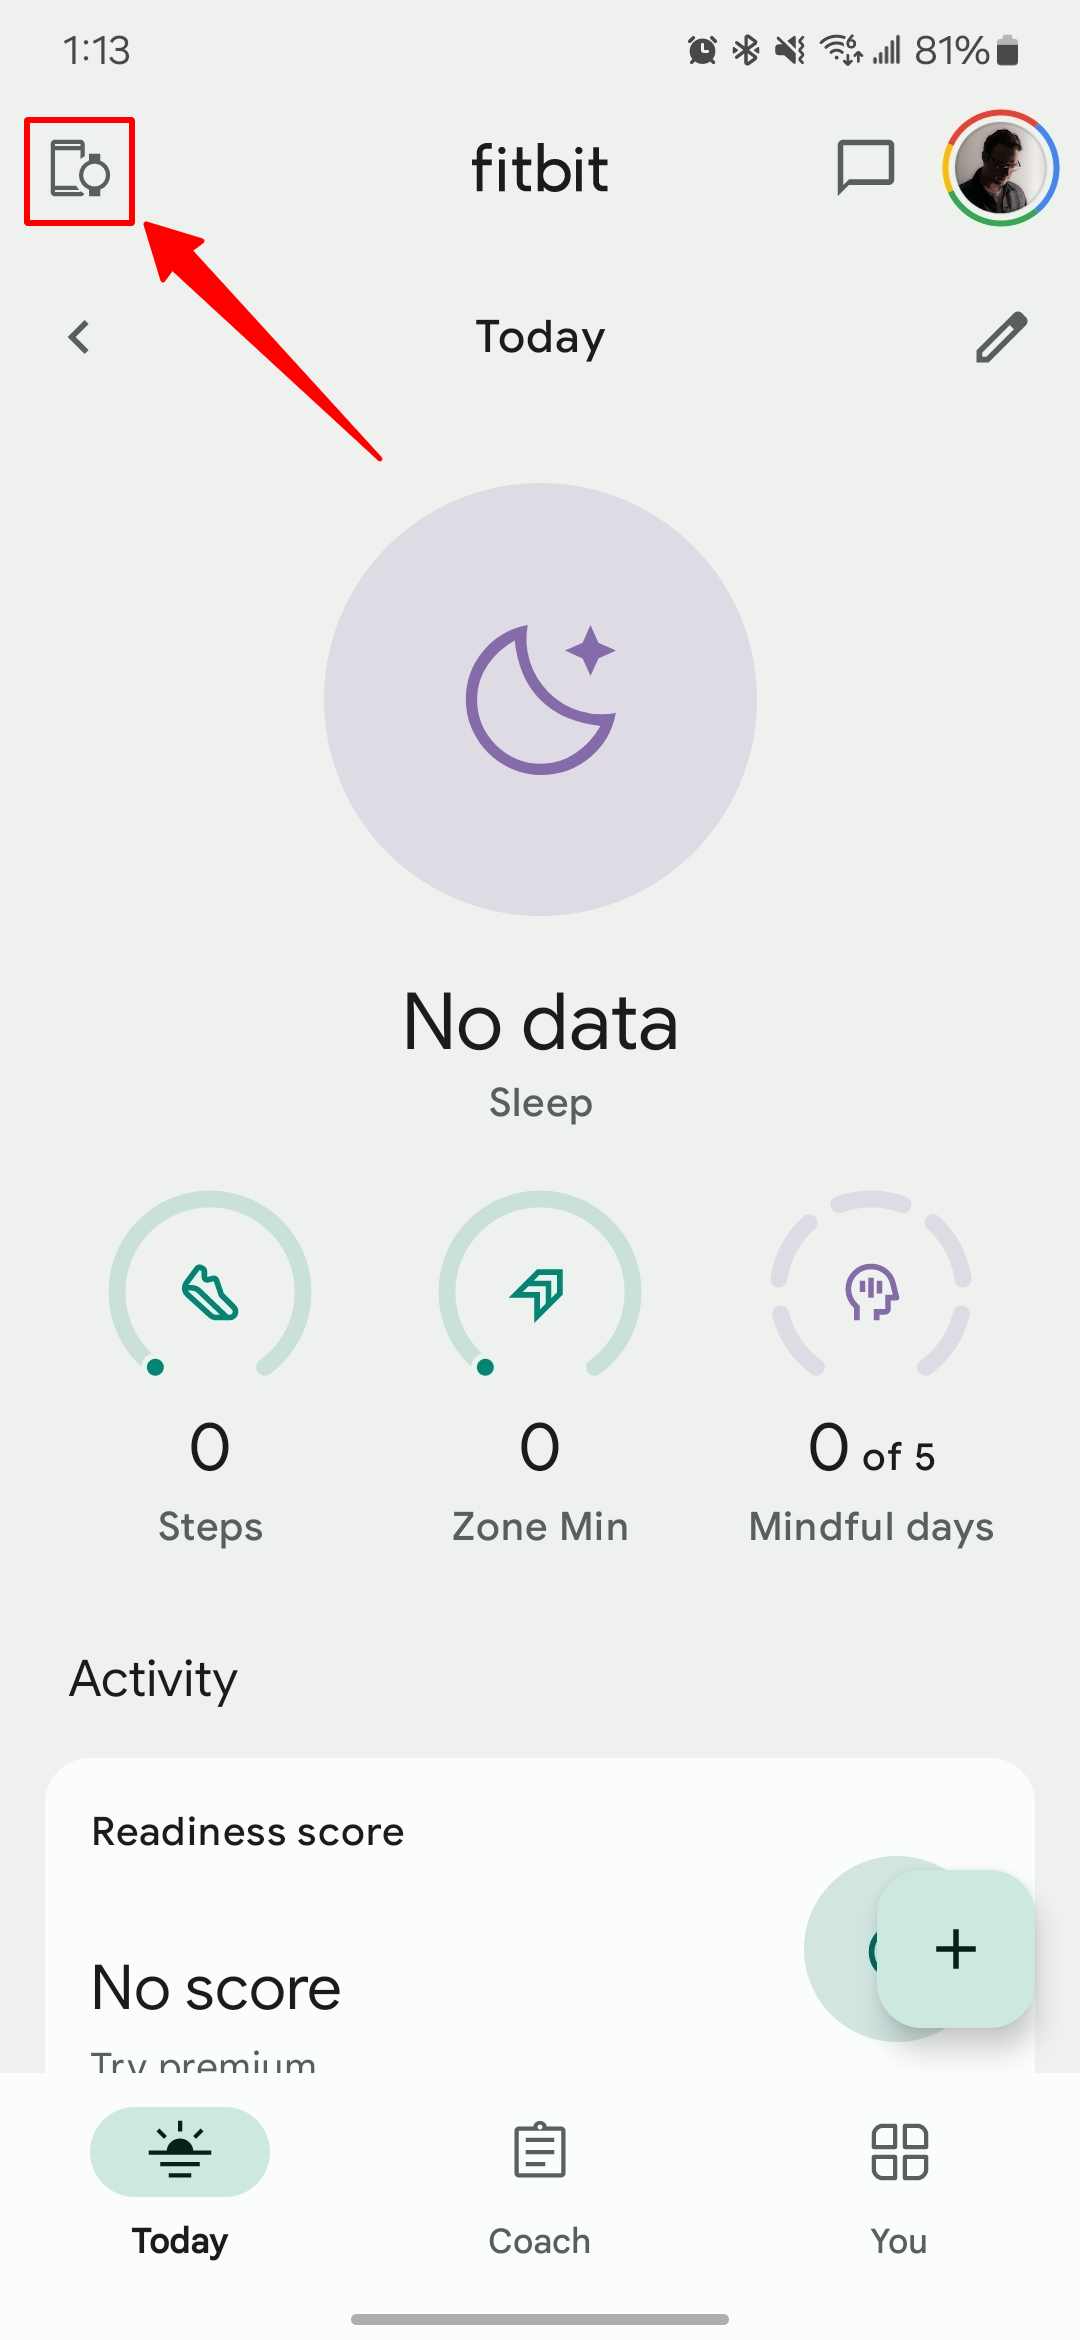 Captura de tela da tela inicial do aplicativo Fitbit com uma seta apontando para o ícone do dispositivo.